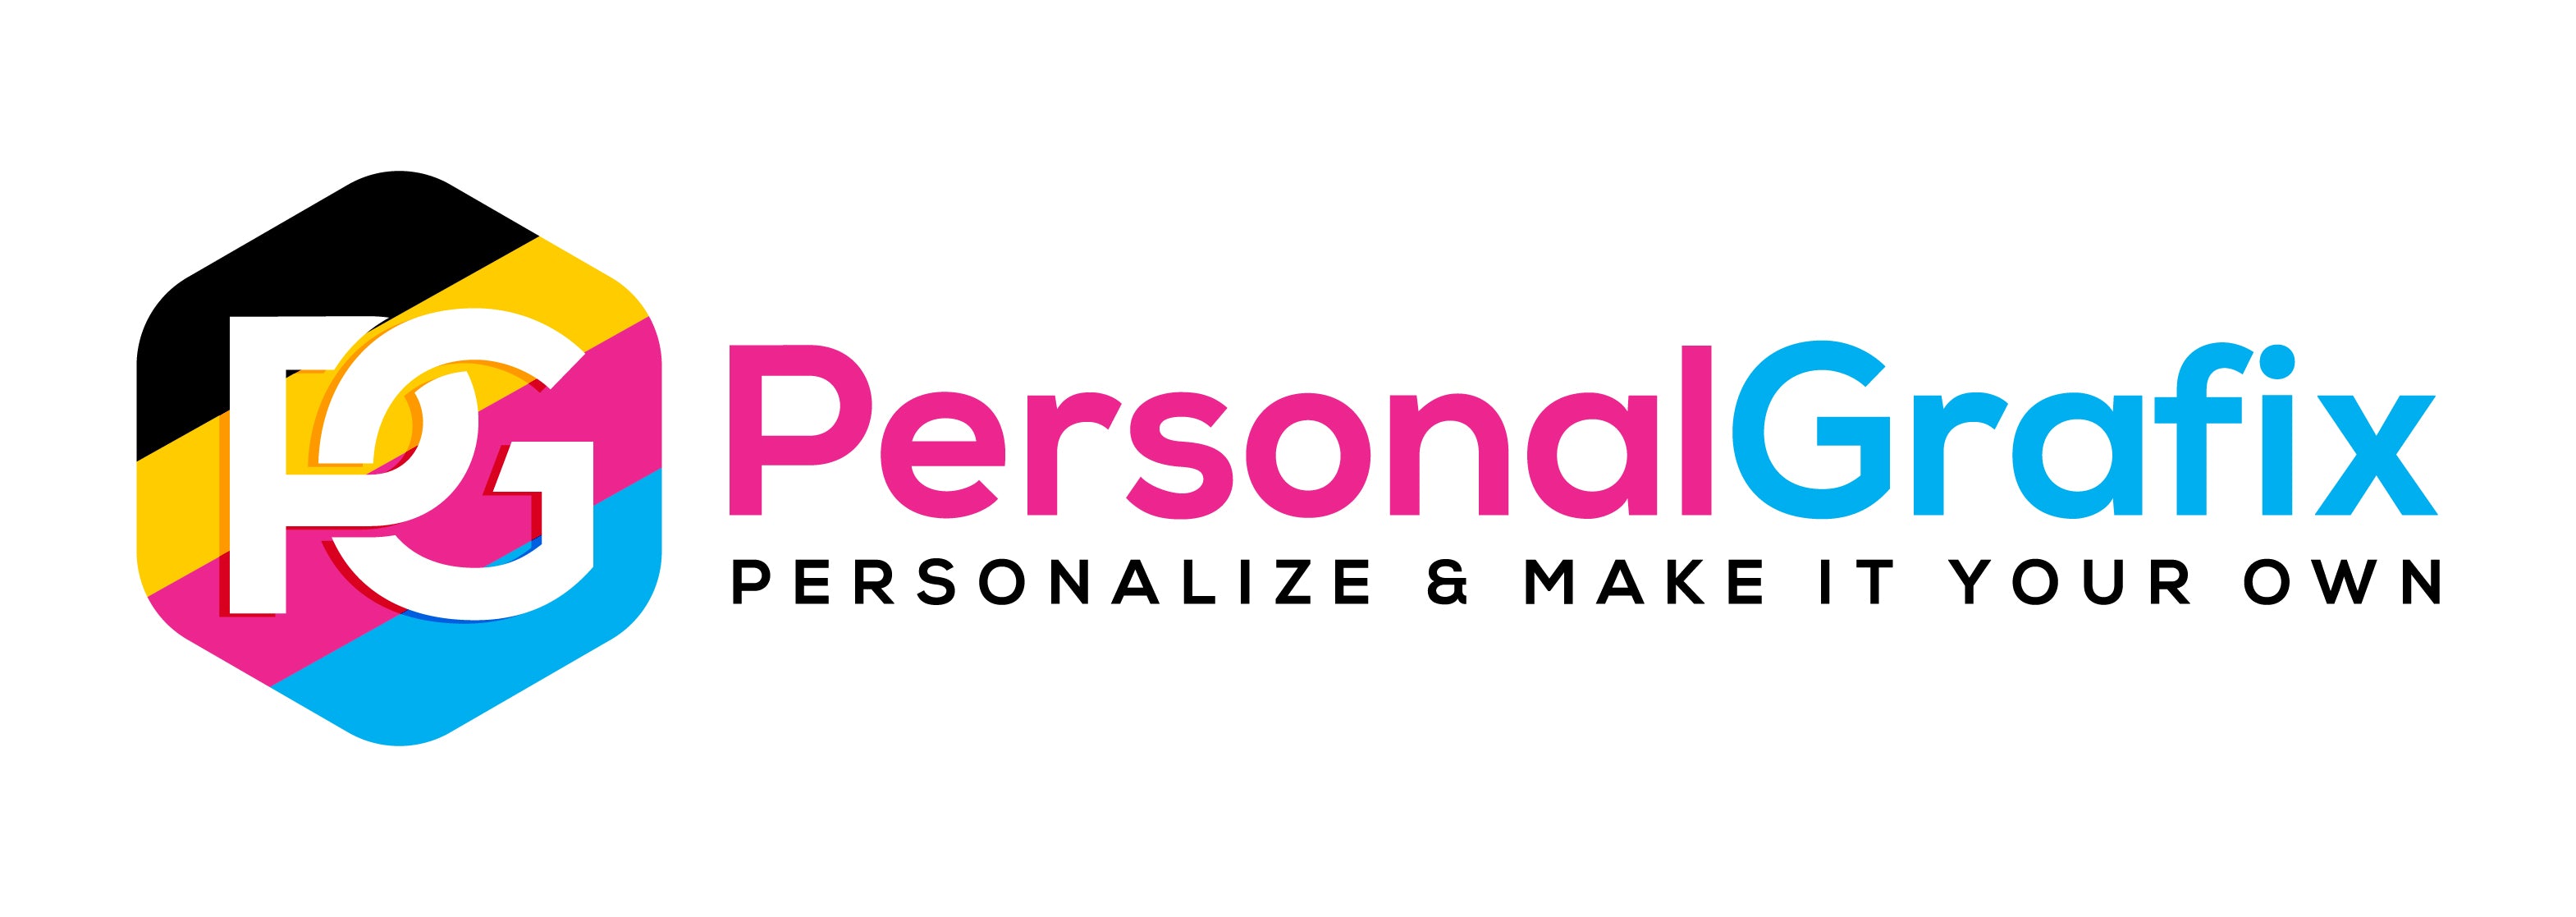 PersonalGrafix.com